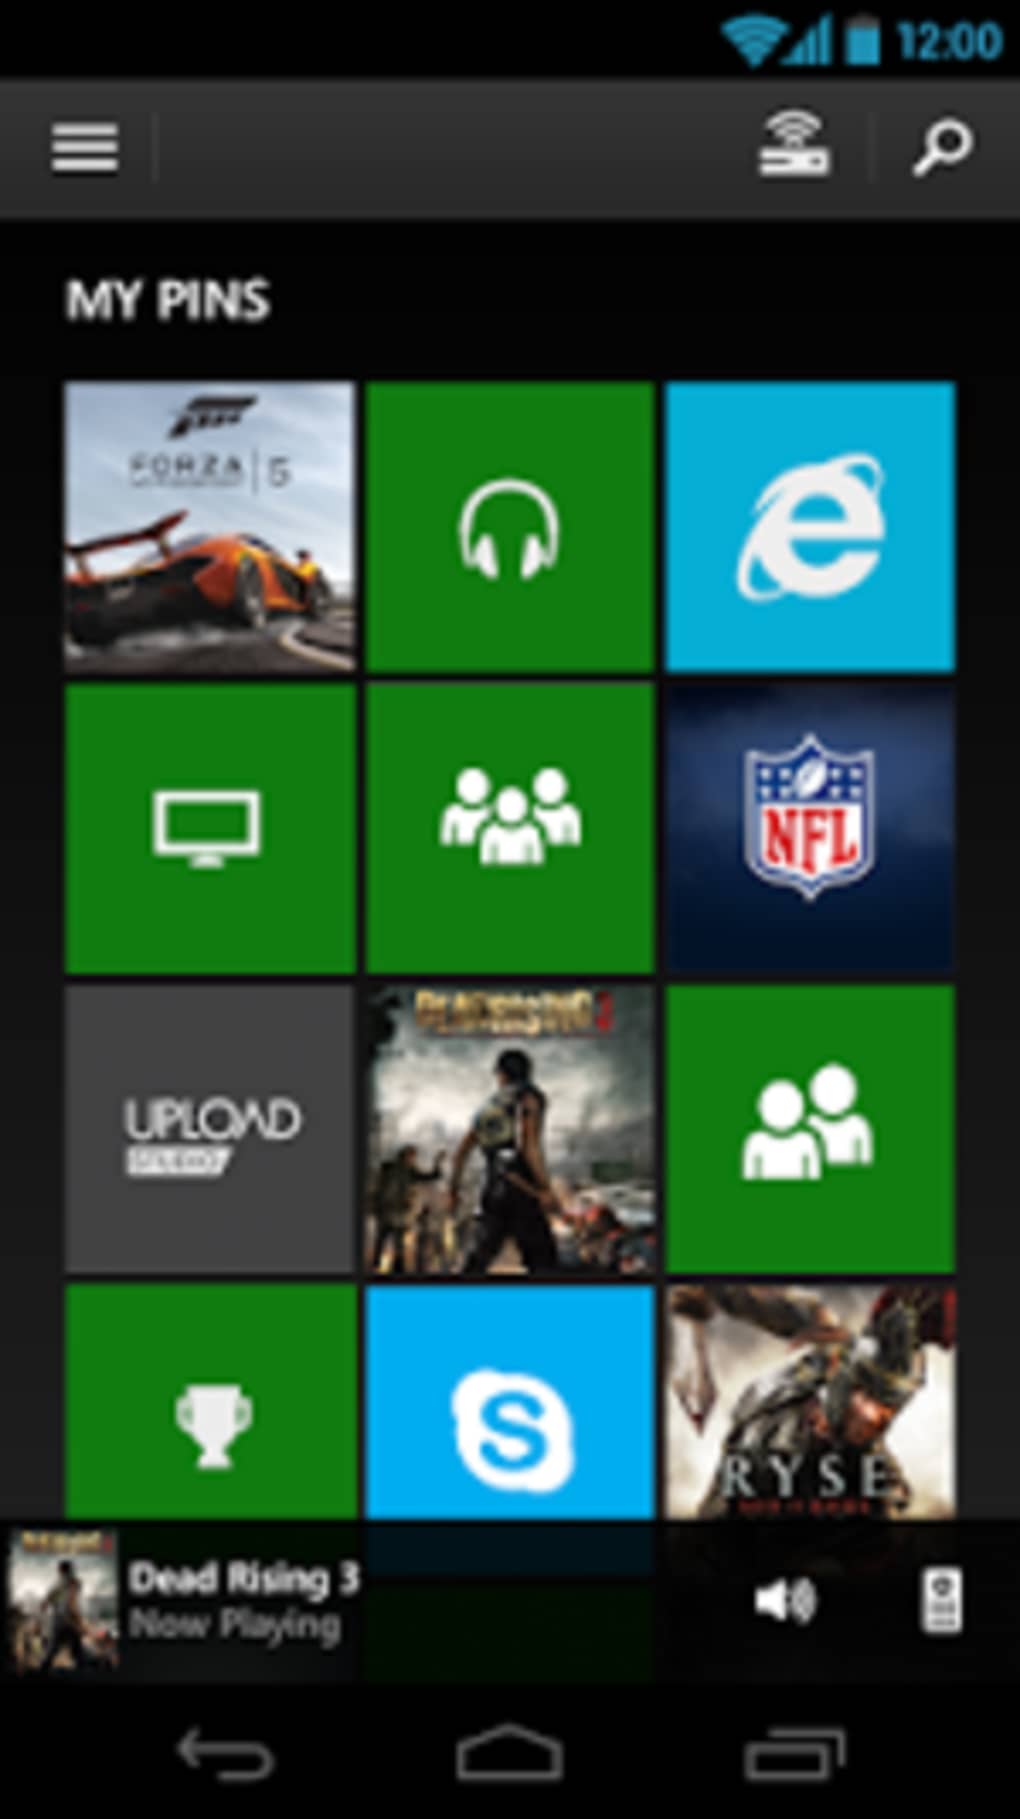 Onderscheid pellet Werkloos Xbox APK for Android - Download